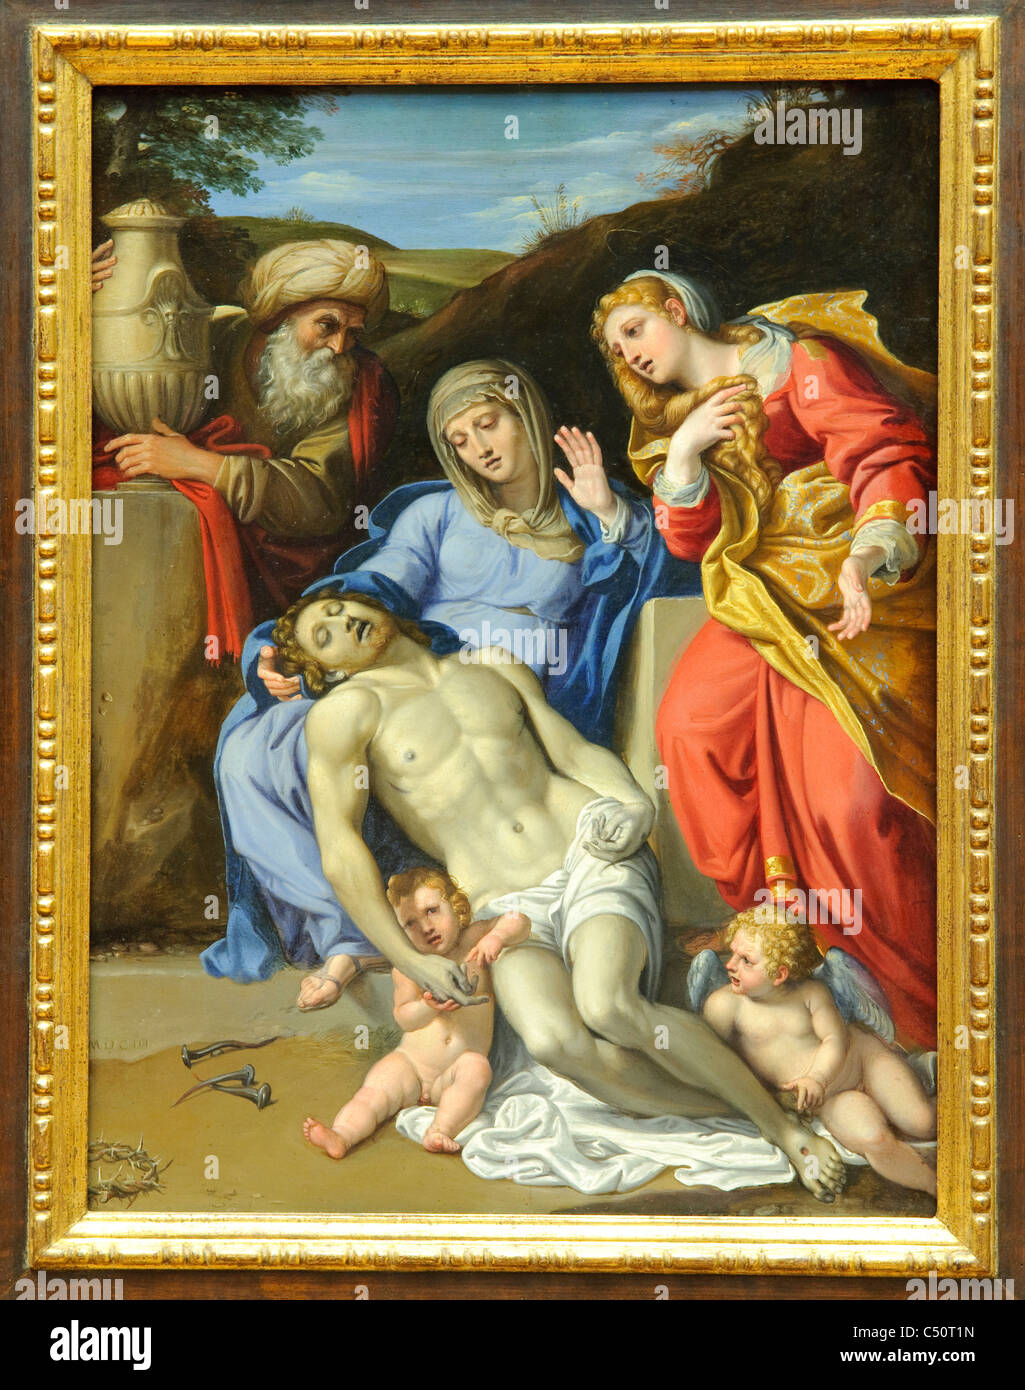 The Lamentation, 1603, by Domenichino Stock Photo - Alamy